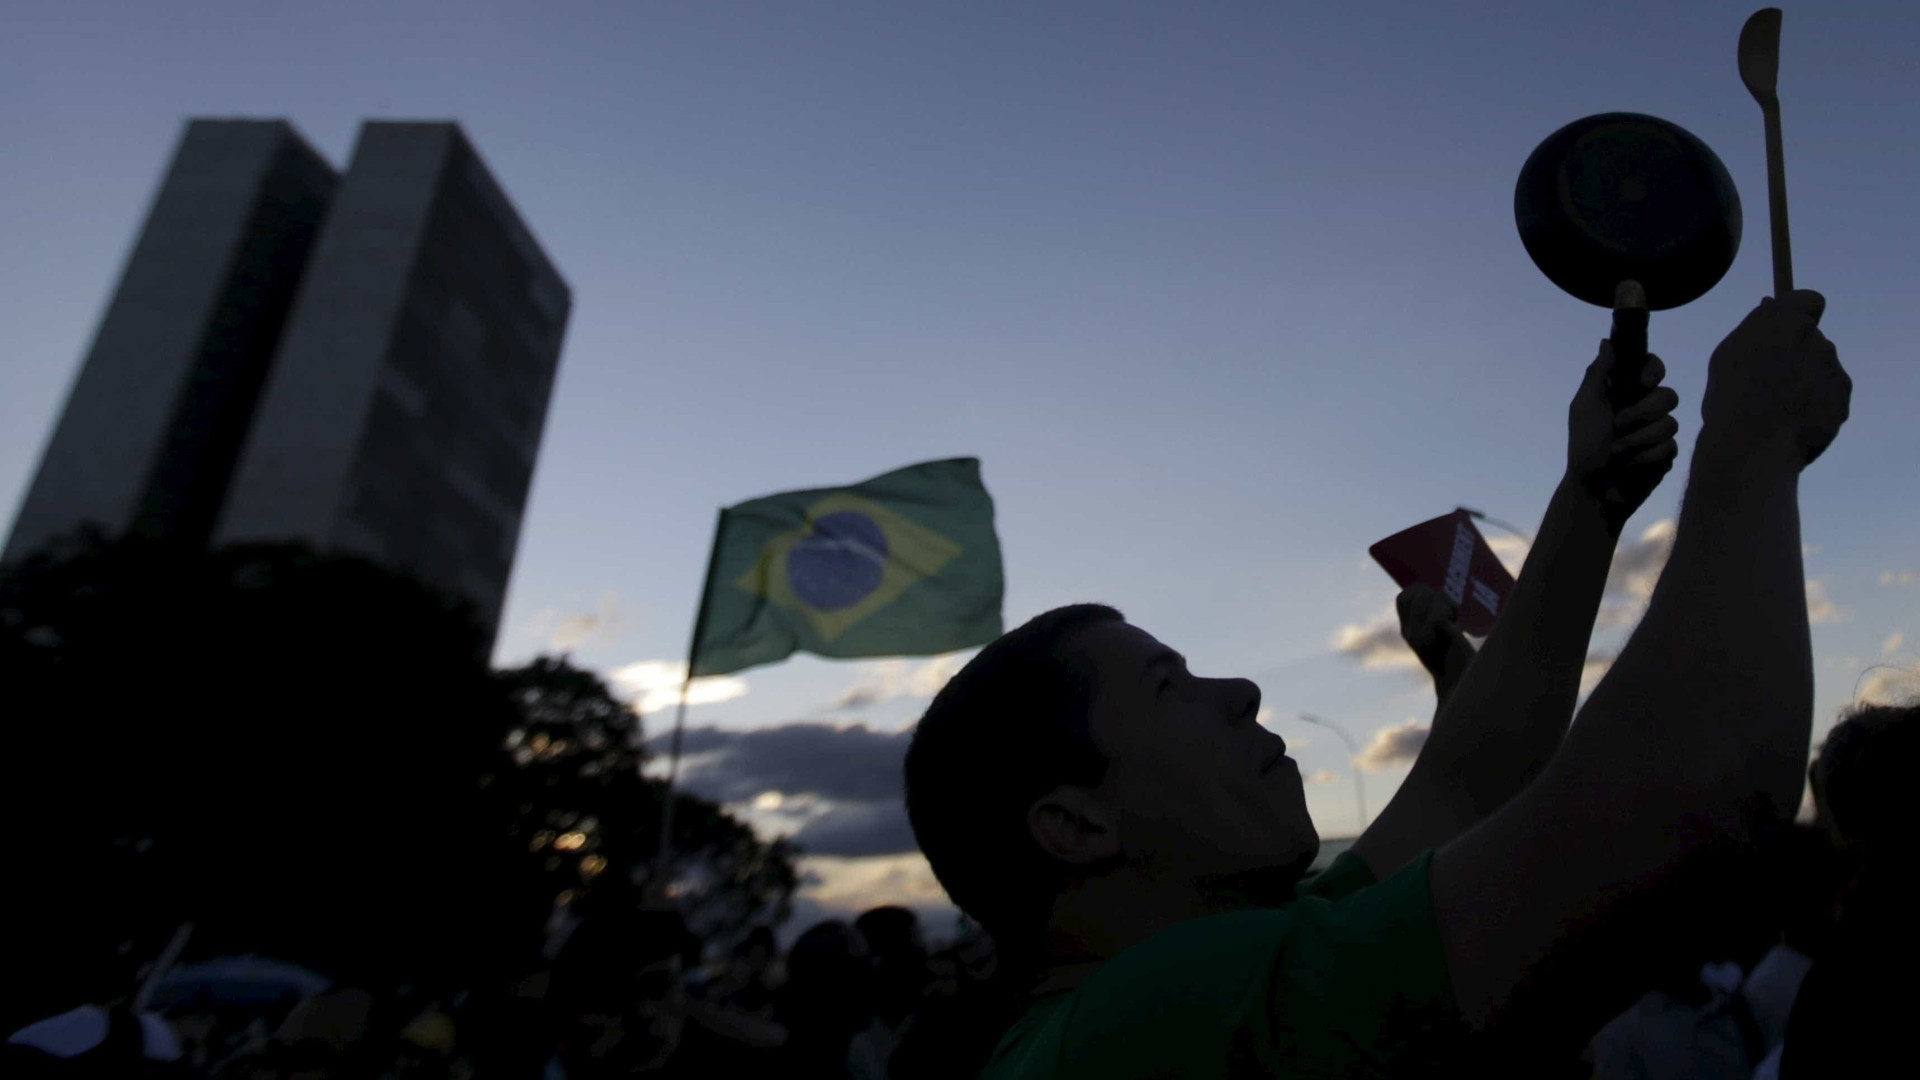 Bolsonaristas ignora pandemia, ataca Doria e pede reabertura a comércio